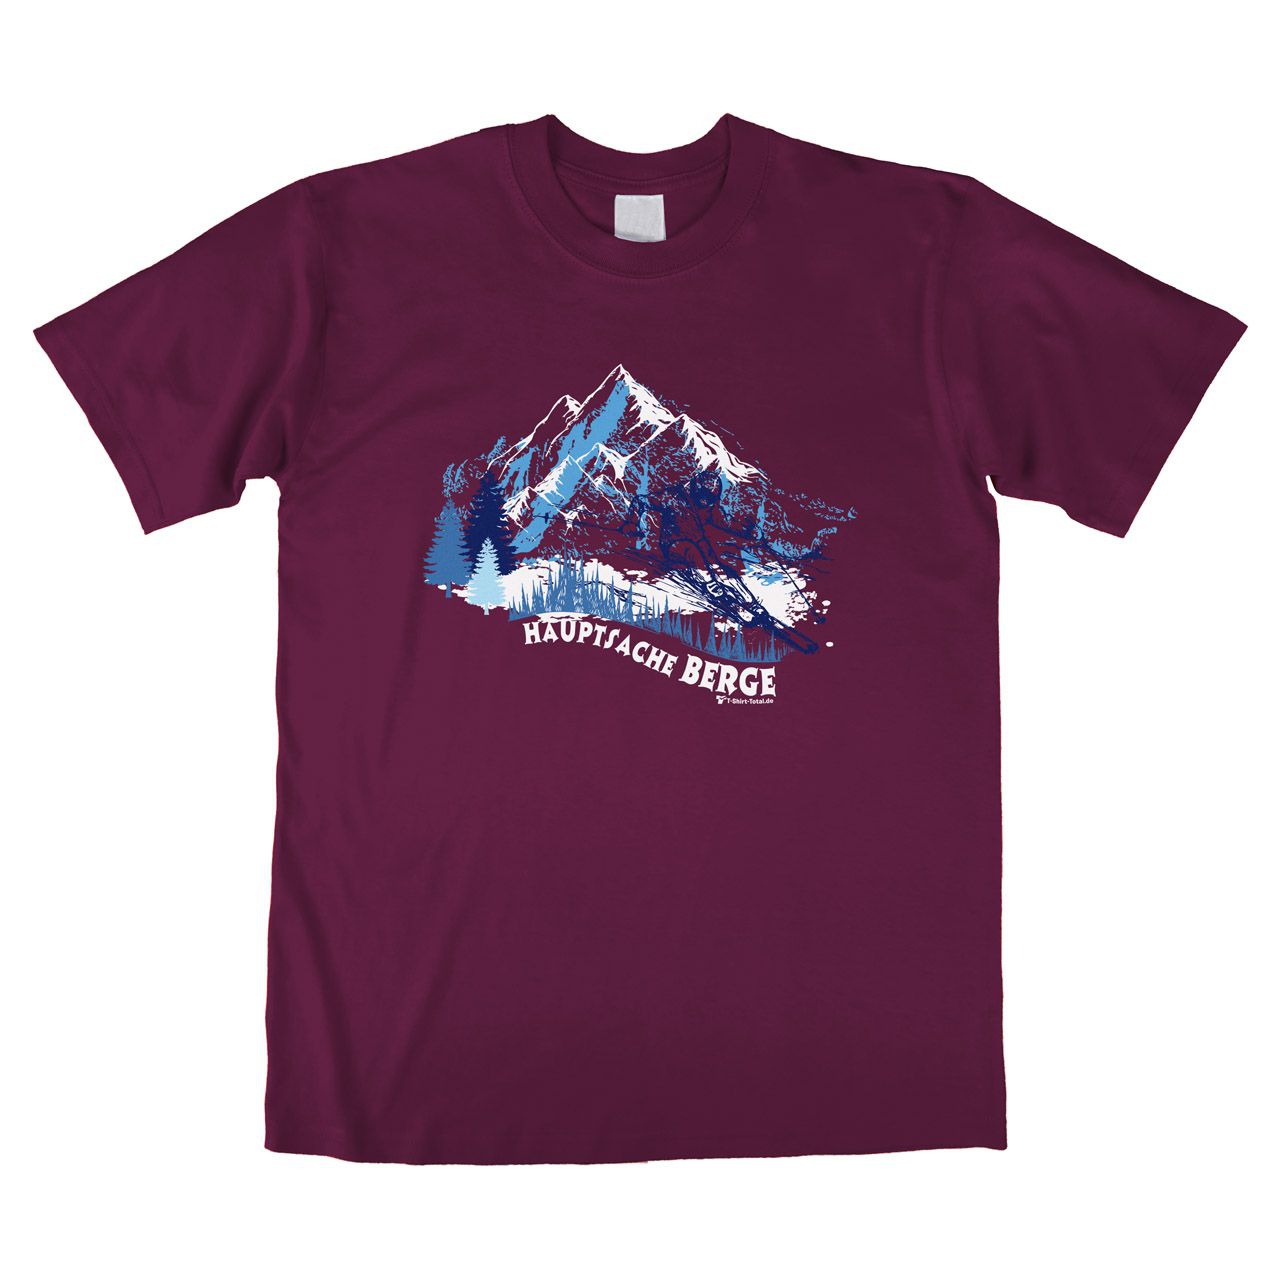 Hauptsache Berge Unisex T-Shirt bordeaux Medium